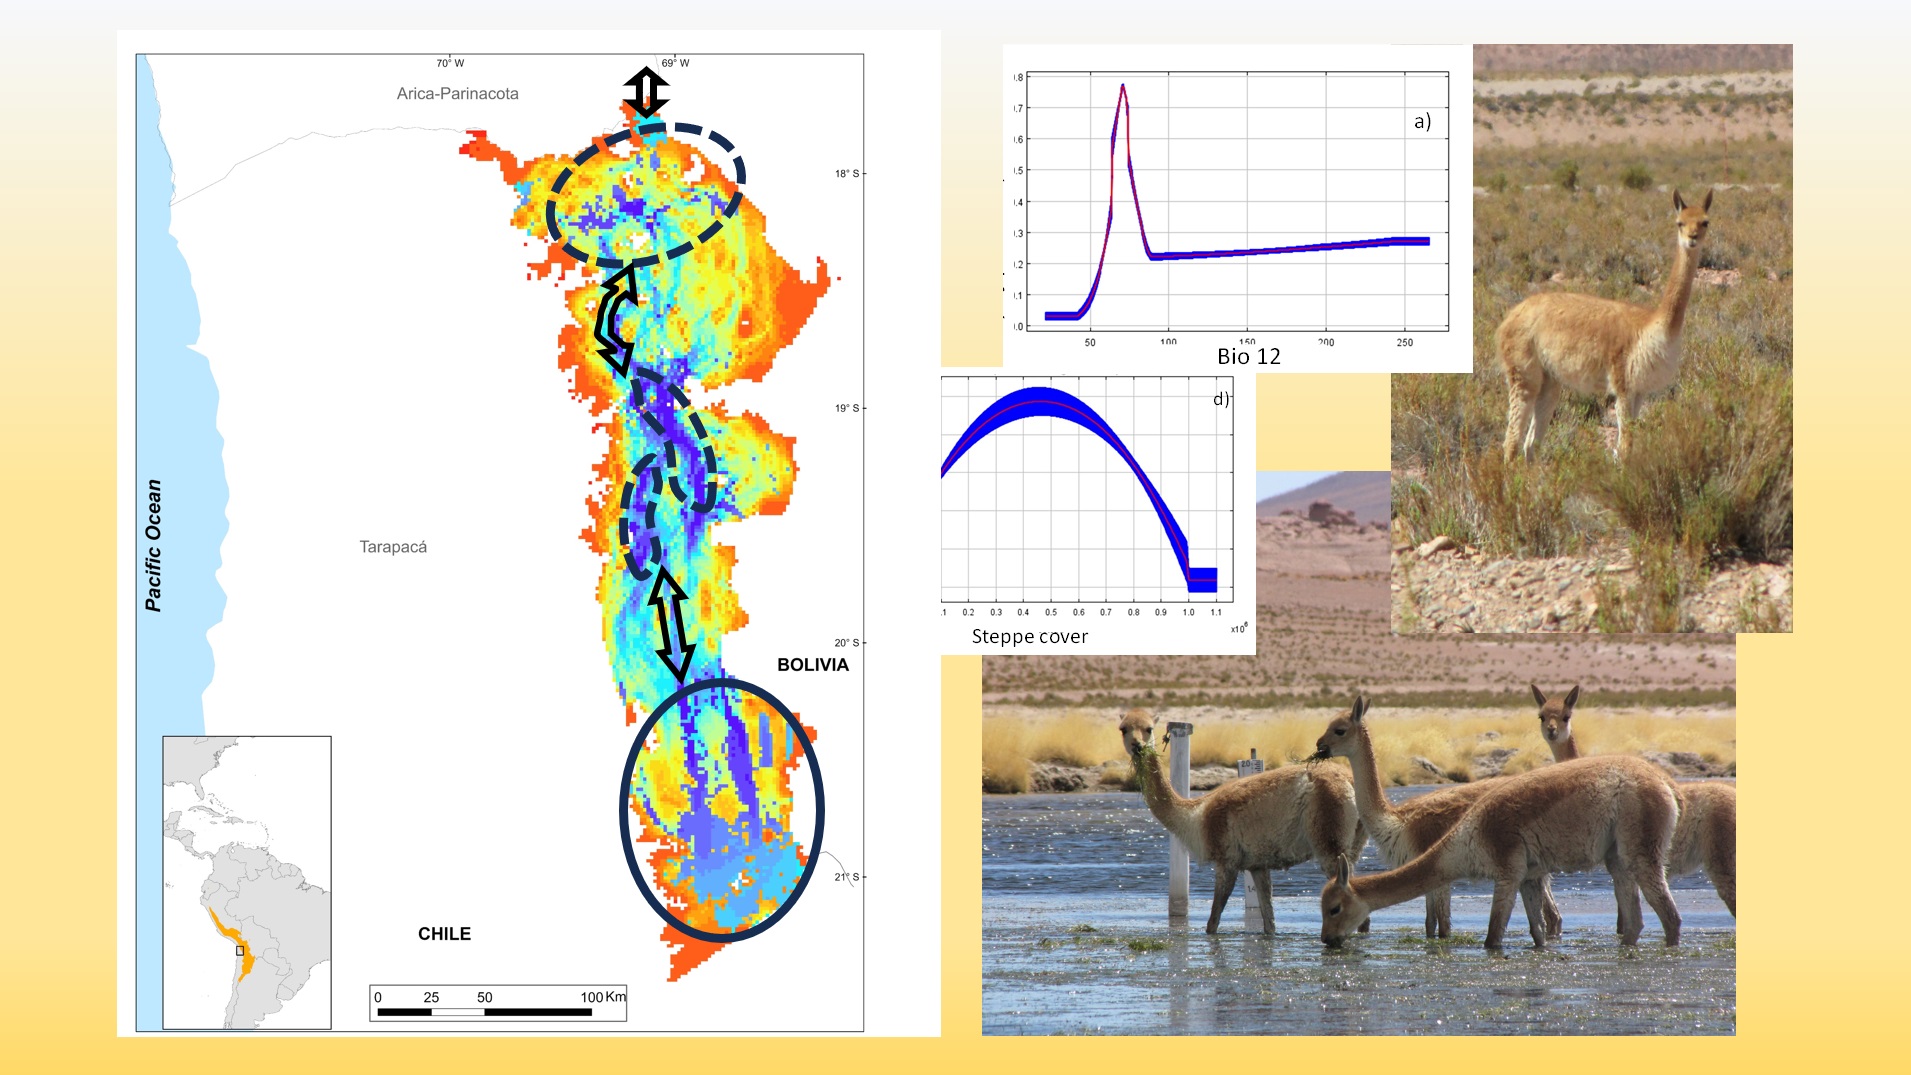 Mapa de idoneidad de hábitats para la vicuña en Tarapacá, indicando las zonas núcleo y corredores. Además, imágenes de la especie y gráficos de respuesta a 2 variables ambientales